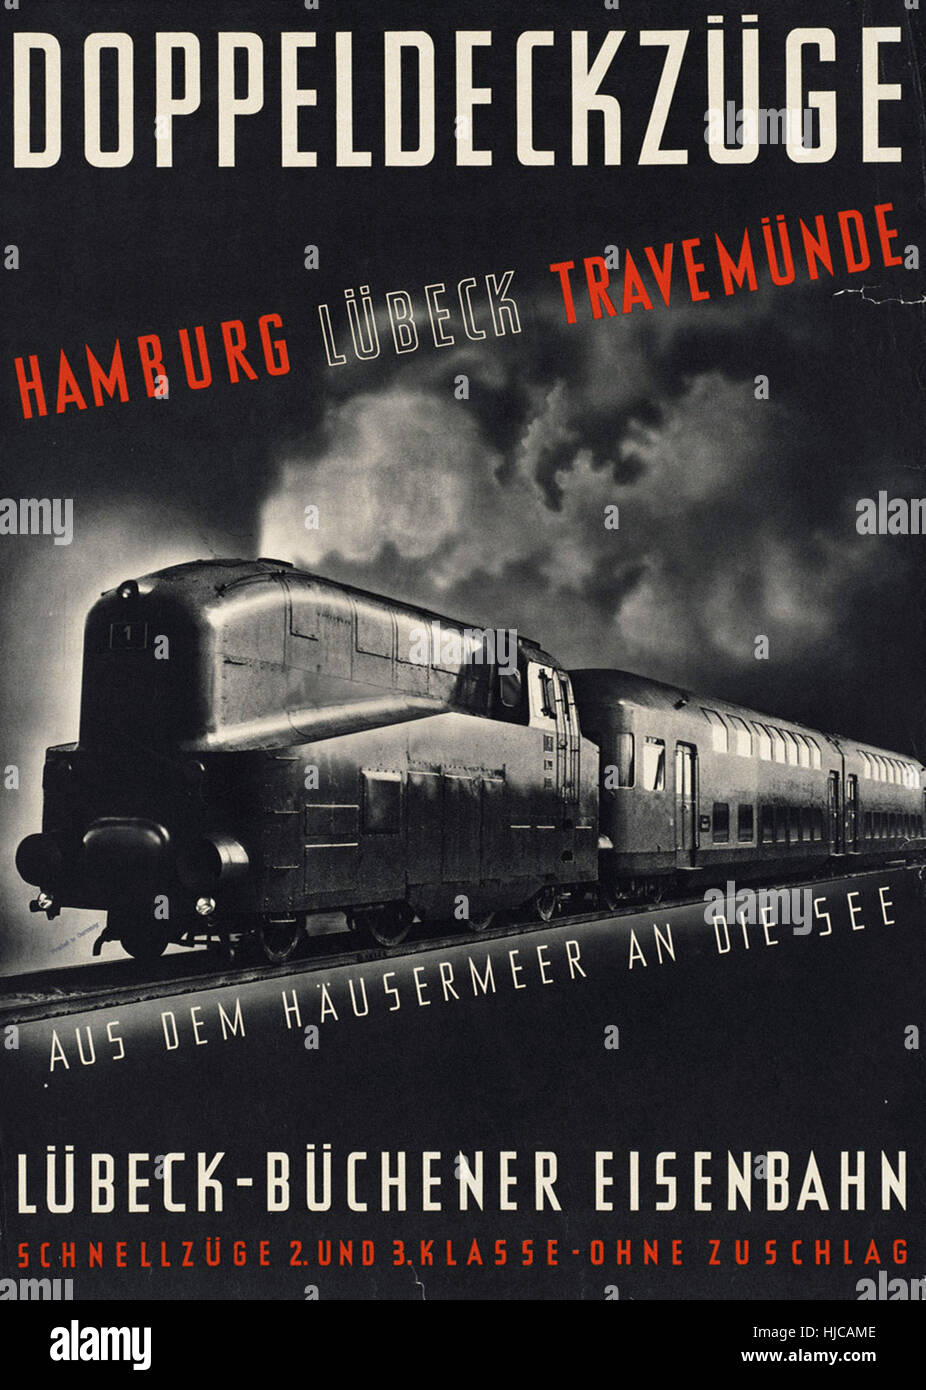 Doppeldeckzuge - Vintage Reise Poster der 1920er Jahre der 1940er-Jahre Stockfoto